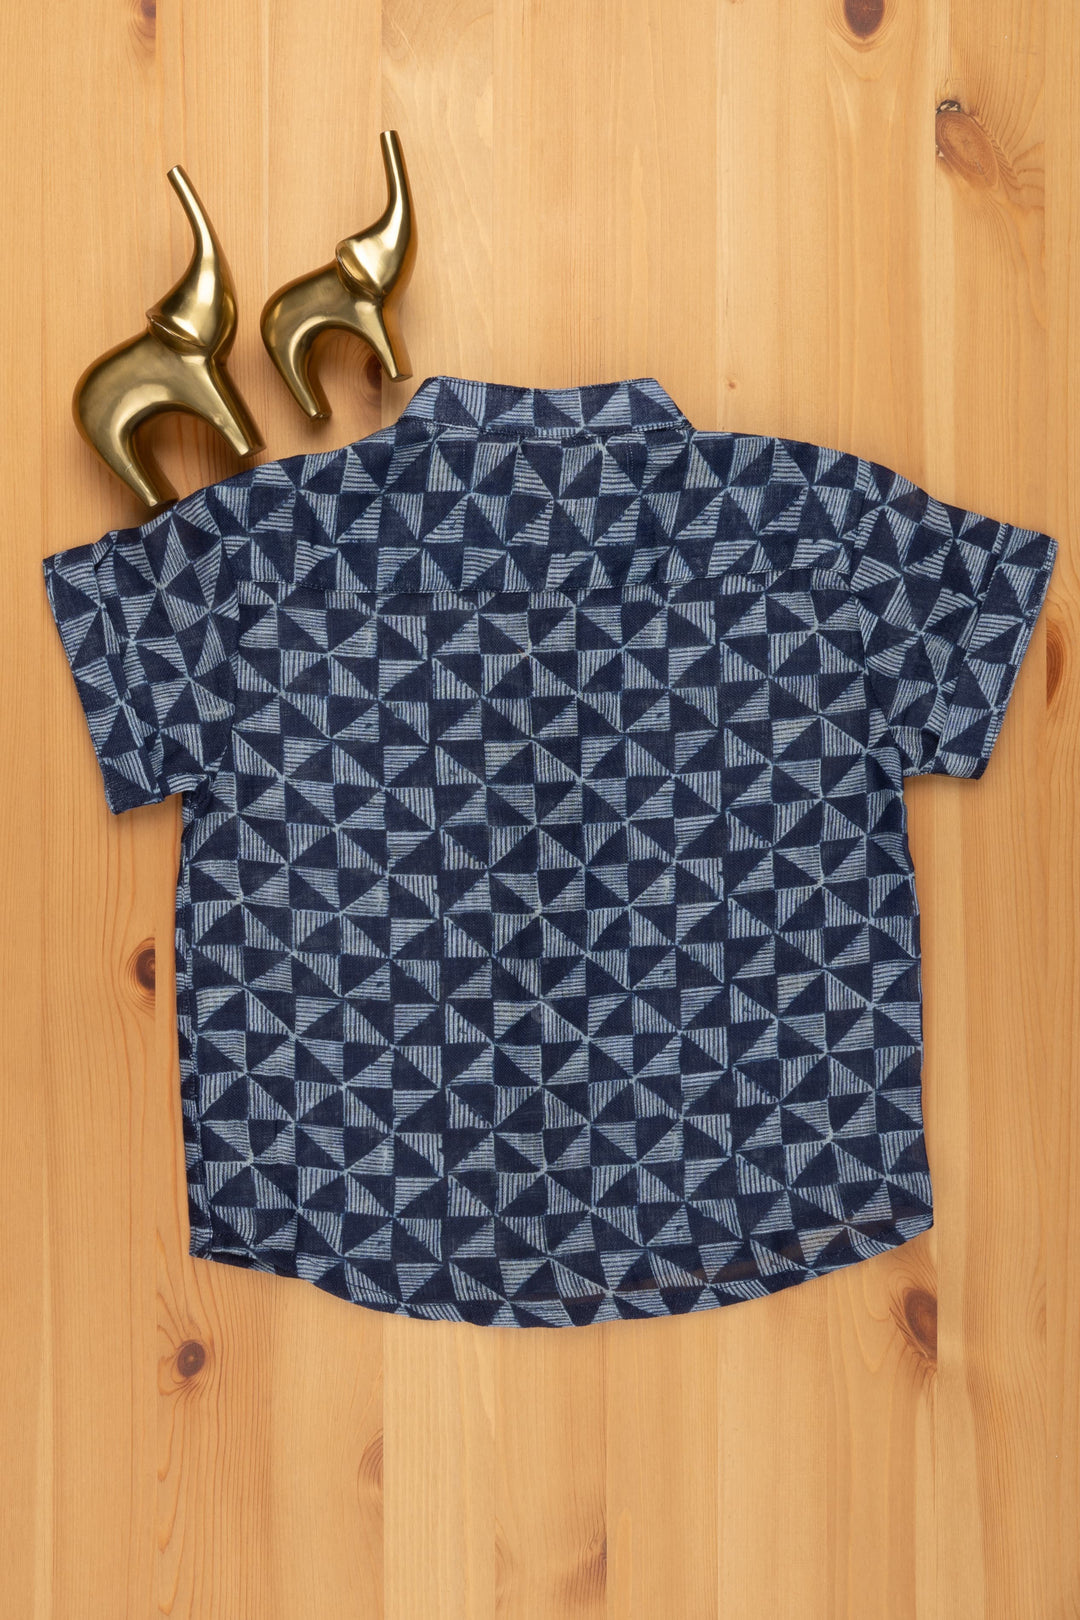 The Nesavu Boys Linen Shirt Indigo Serenity: Linen Boys' Shirt with Tranquil Blue Prints for a Calming Look Nesavu Tranquil Blue Printed Shirt | Baby Shirt Online | The Nesavu